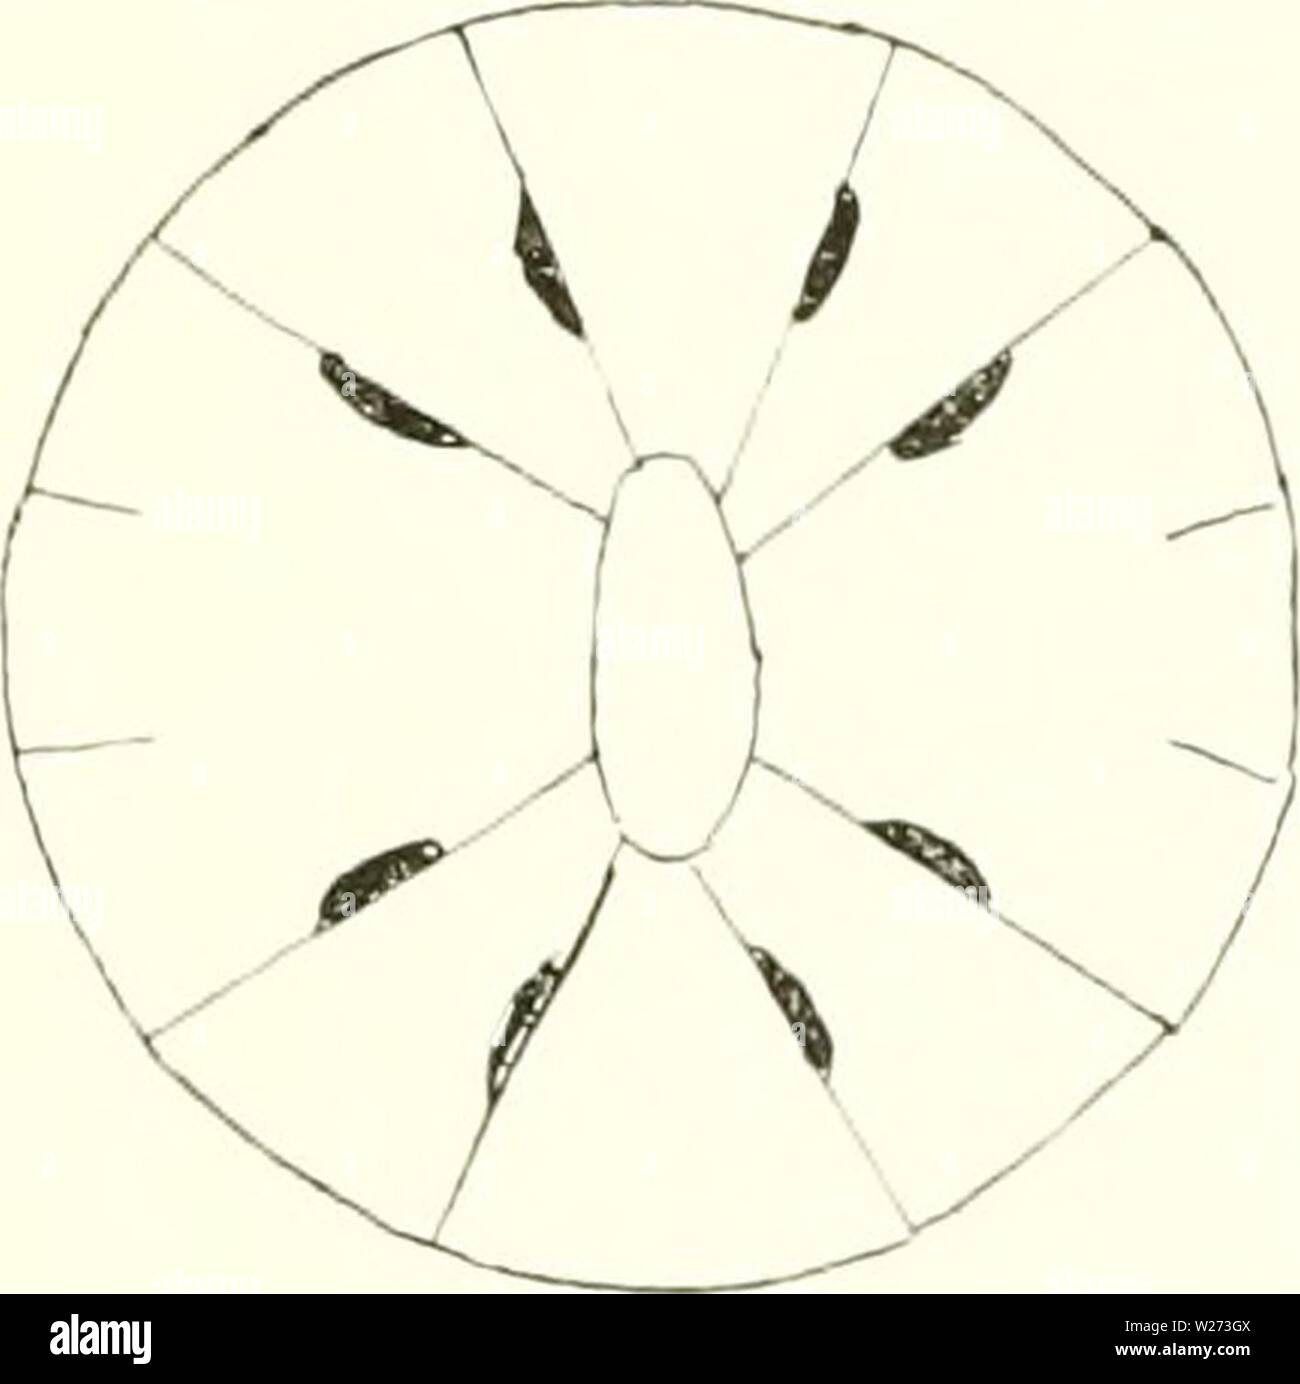 Imagen de archivo de la página 36 de la danesa Ingolf-Expedition (1899-1953). El danés-expedición Ingolf danishingolfex5dpt12daniuoft Año: 1899-1953 ACTI MARIA tentáculos parcialmente 22-29 ,&LT; 4-4,5 (5) // inierohasic amasti&LT;,'ophors, parcialmente (14) 19-22 (28) x 2,5/(, basitrichs, aquellos de la actinopha- rynx parcialmente 26-29x3.5-4.5/; microbasic /j-inastisophors, partlv (22)23-27x2.5-3/; los de basitrichs los filamentos parcialmente 10-13 X 4-4.5/; en parte, 22-26 x 4-4.5//, tanto microba.sic /j-masti- gophors, parcialmente 11-15 x 1,5/&LT;, basitrichs, aquellos de la acontia partlv 36-60x4-5.4// microbasic amasti Foto de stock